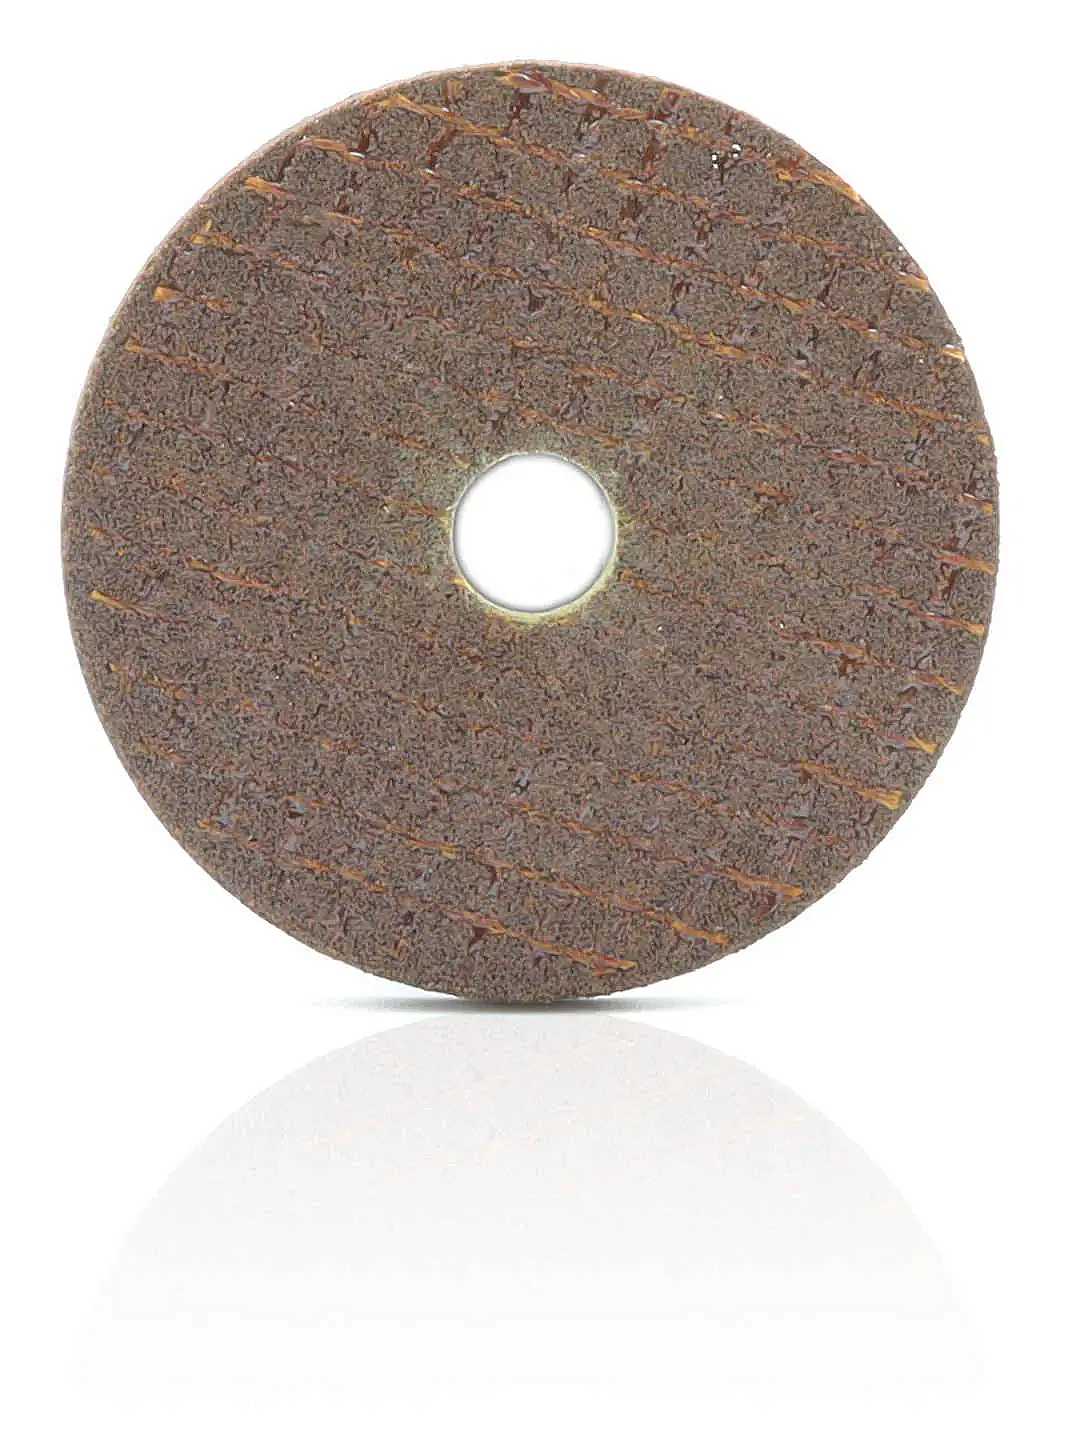 Grinding wheel for piston ring file BAR-TEK®